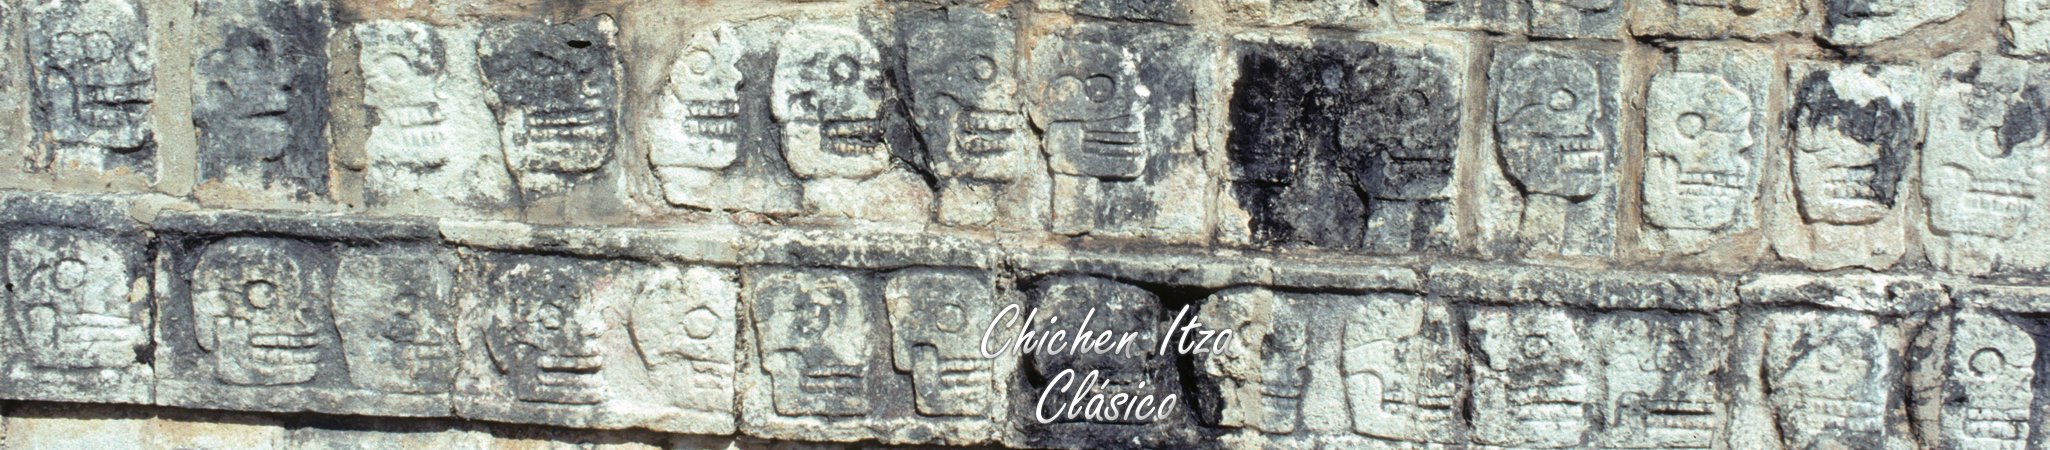 Chichen Itza Tour y Precio